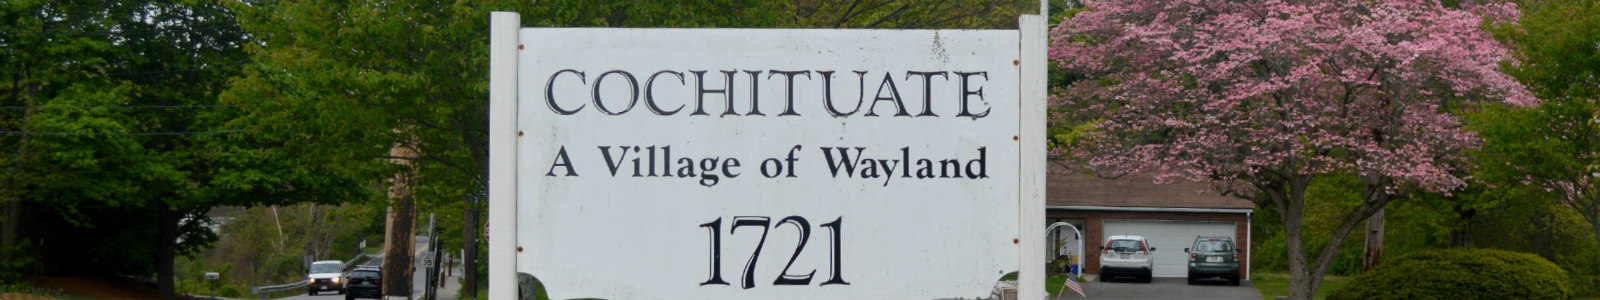 Cochituate Village Wayland